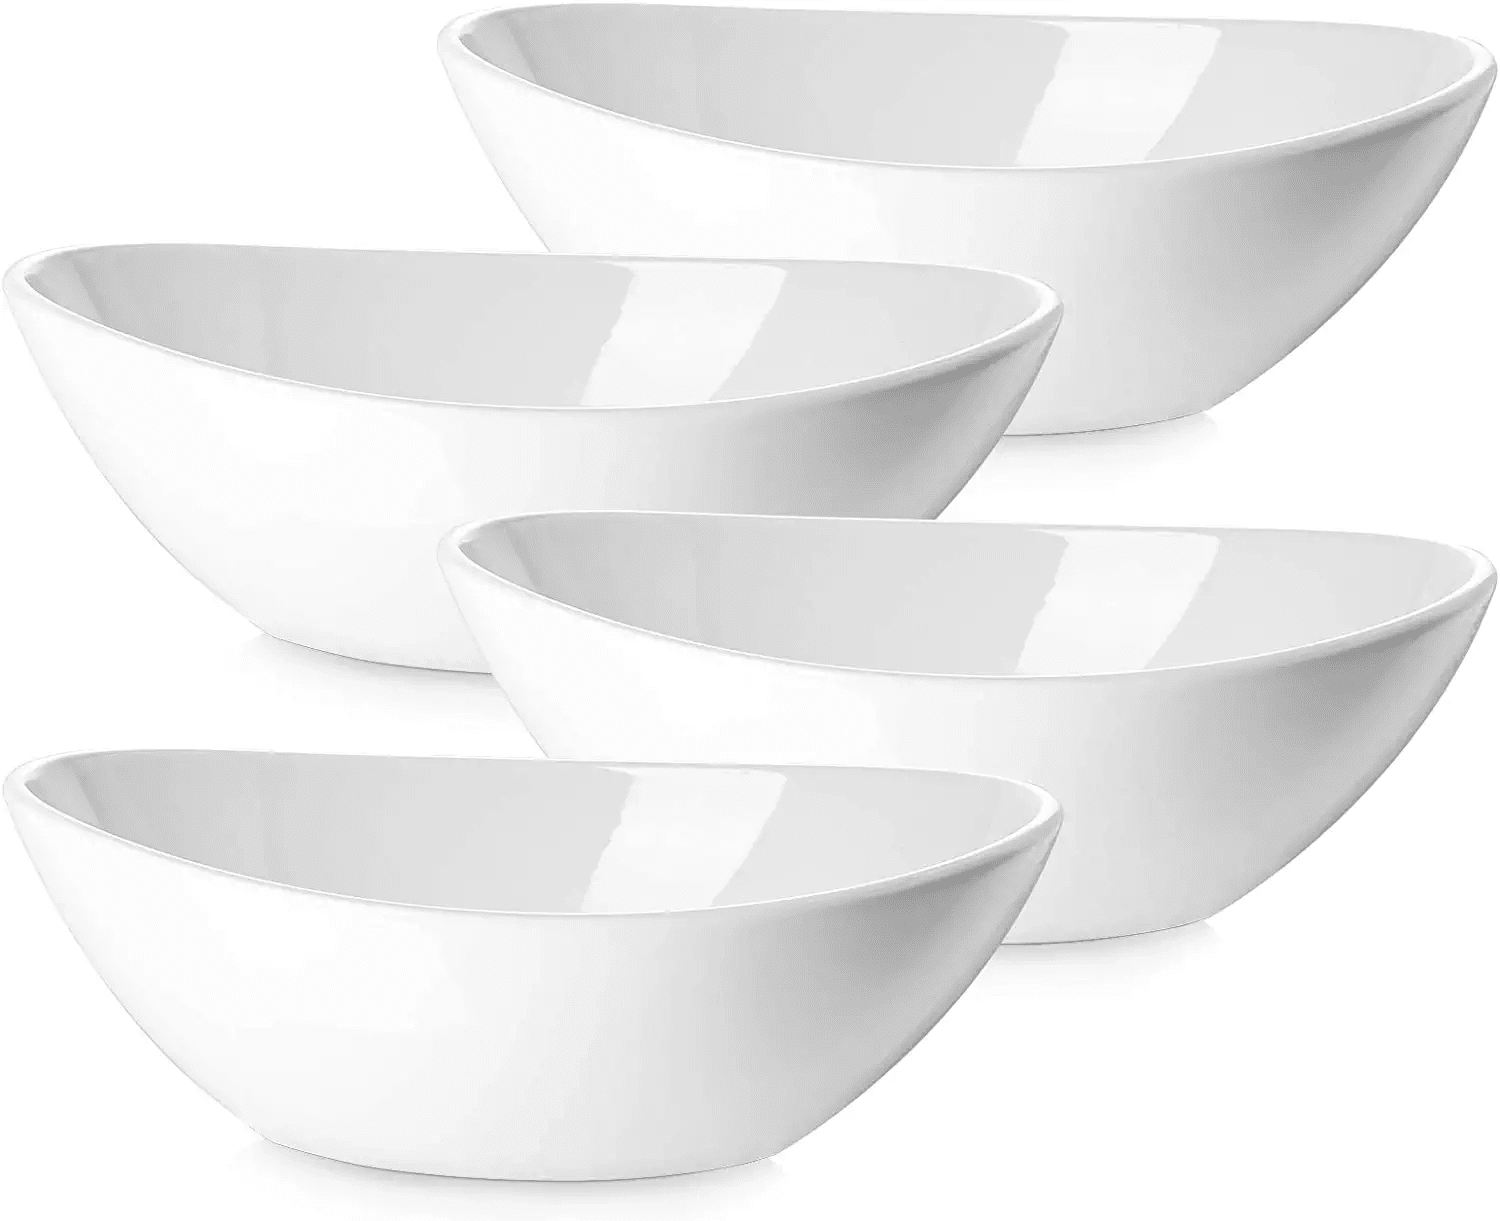 Soup Side dishes LIFVER 1.1 Quart Porcelain Serving Bowls for Salad White Dessert Set of 4 